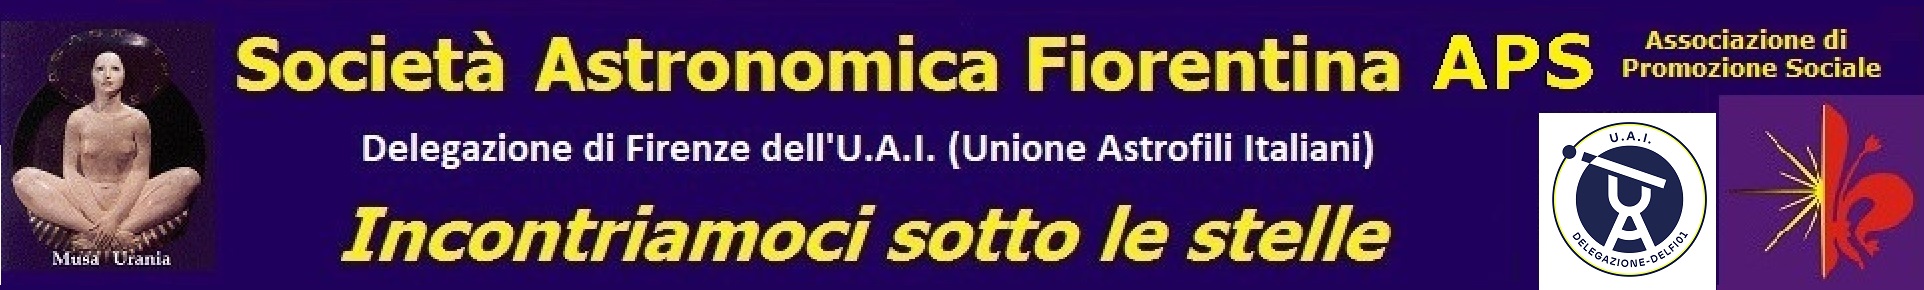 Società Astronomica Fiorentina A.P.S.